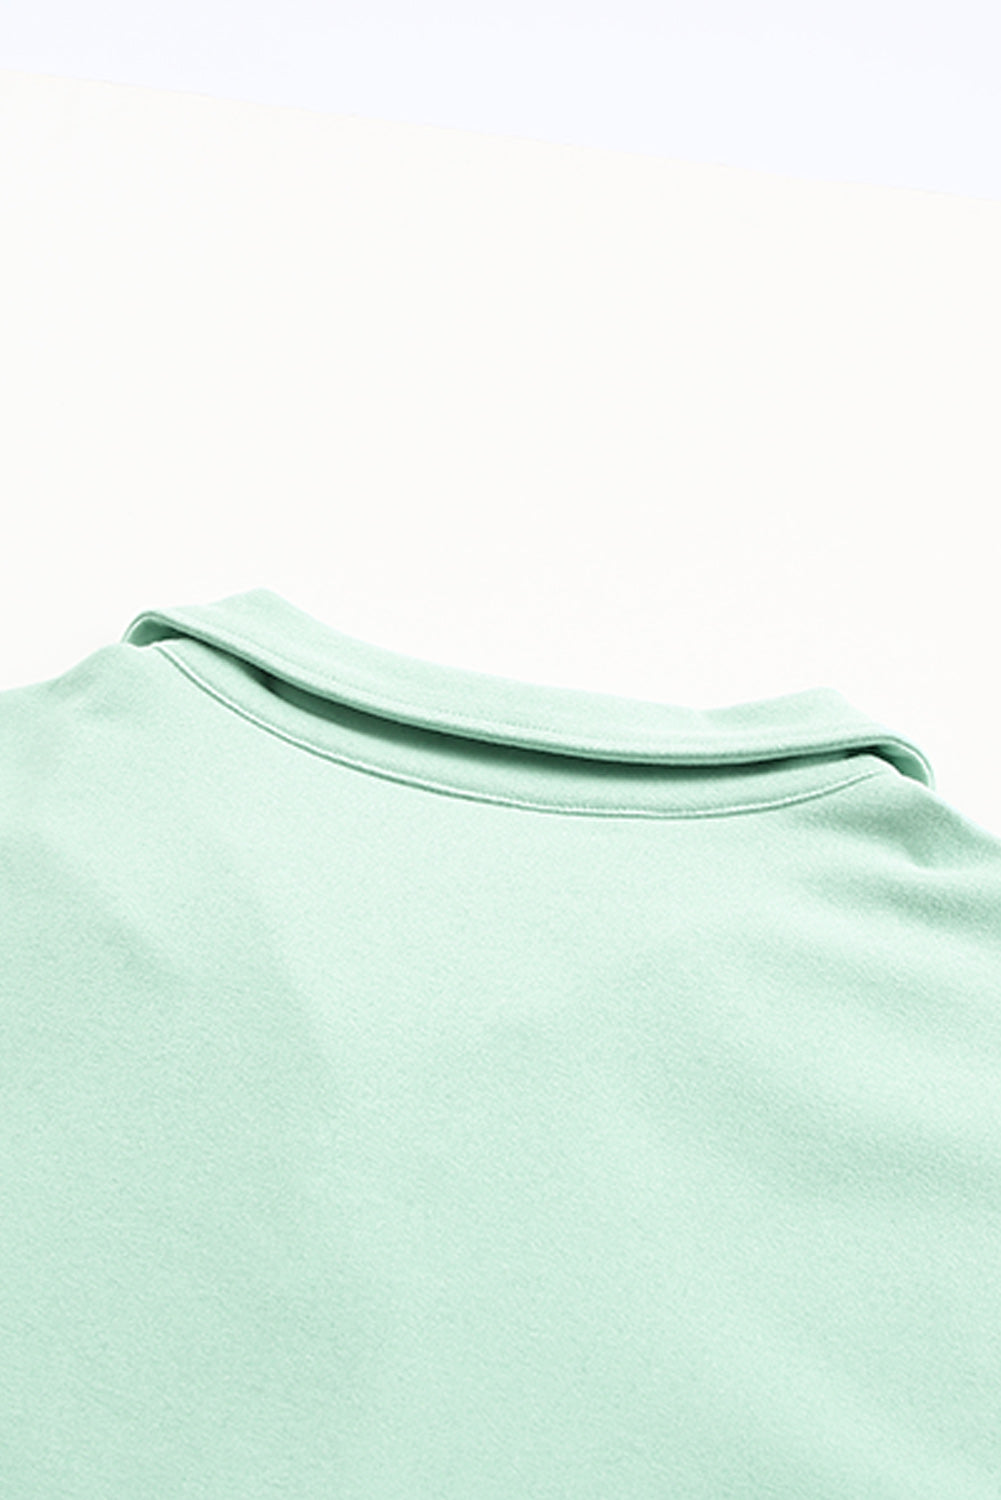 Grünes Pullover-Sweatshirt mit Reißverschluss vorne und Taschen